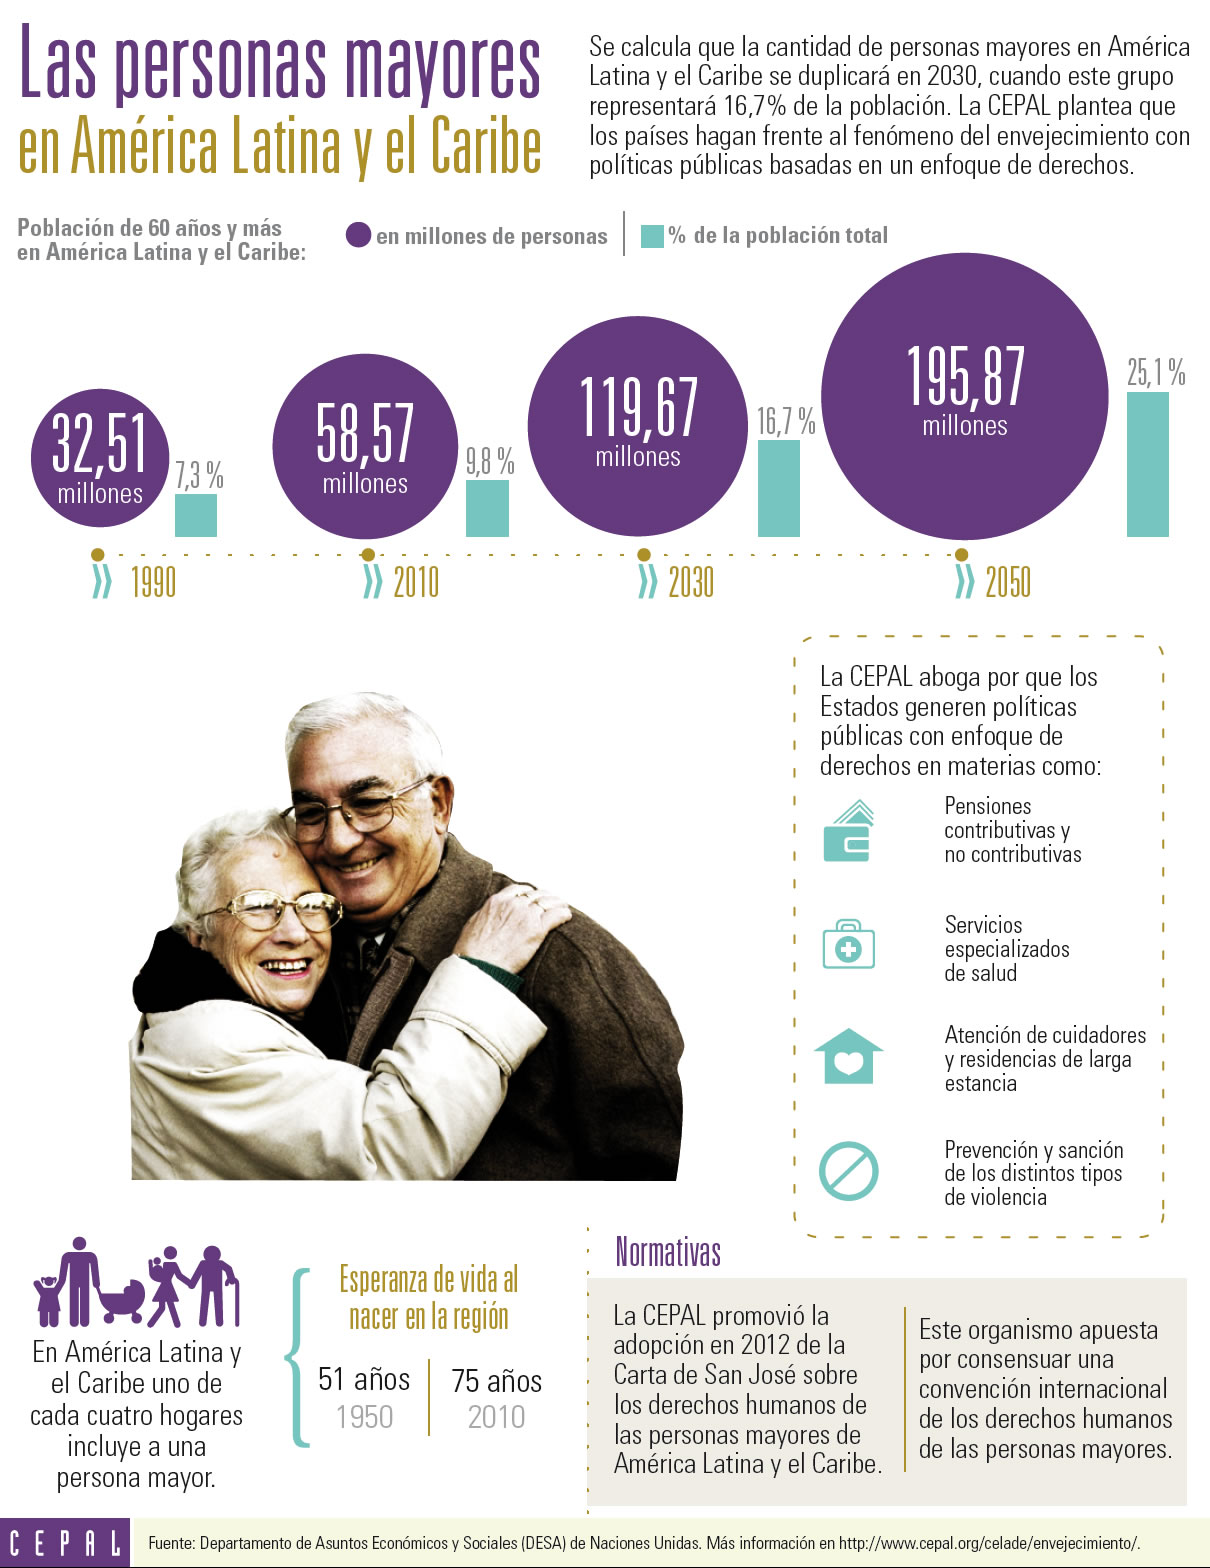 Infografía sobre las personas mayores en América Latina y el Caribe